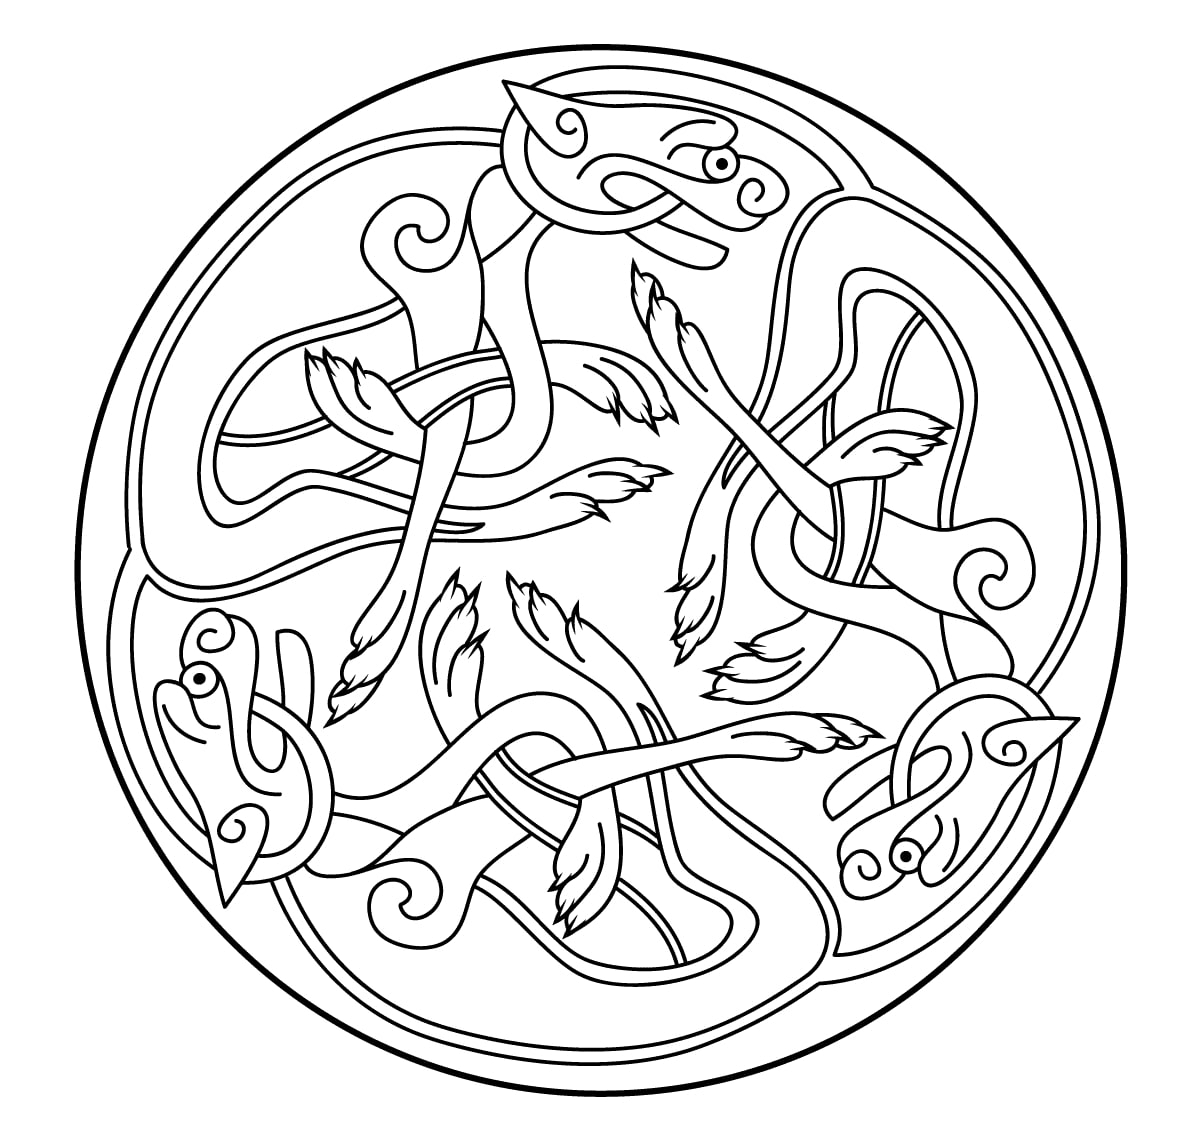 Celtic art design looking like a Mandala, Source : Supercoloring   Artist : Artsashina